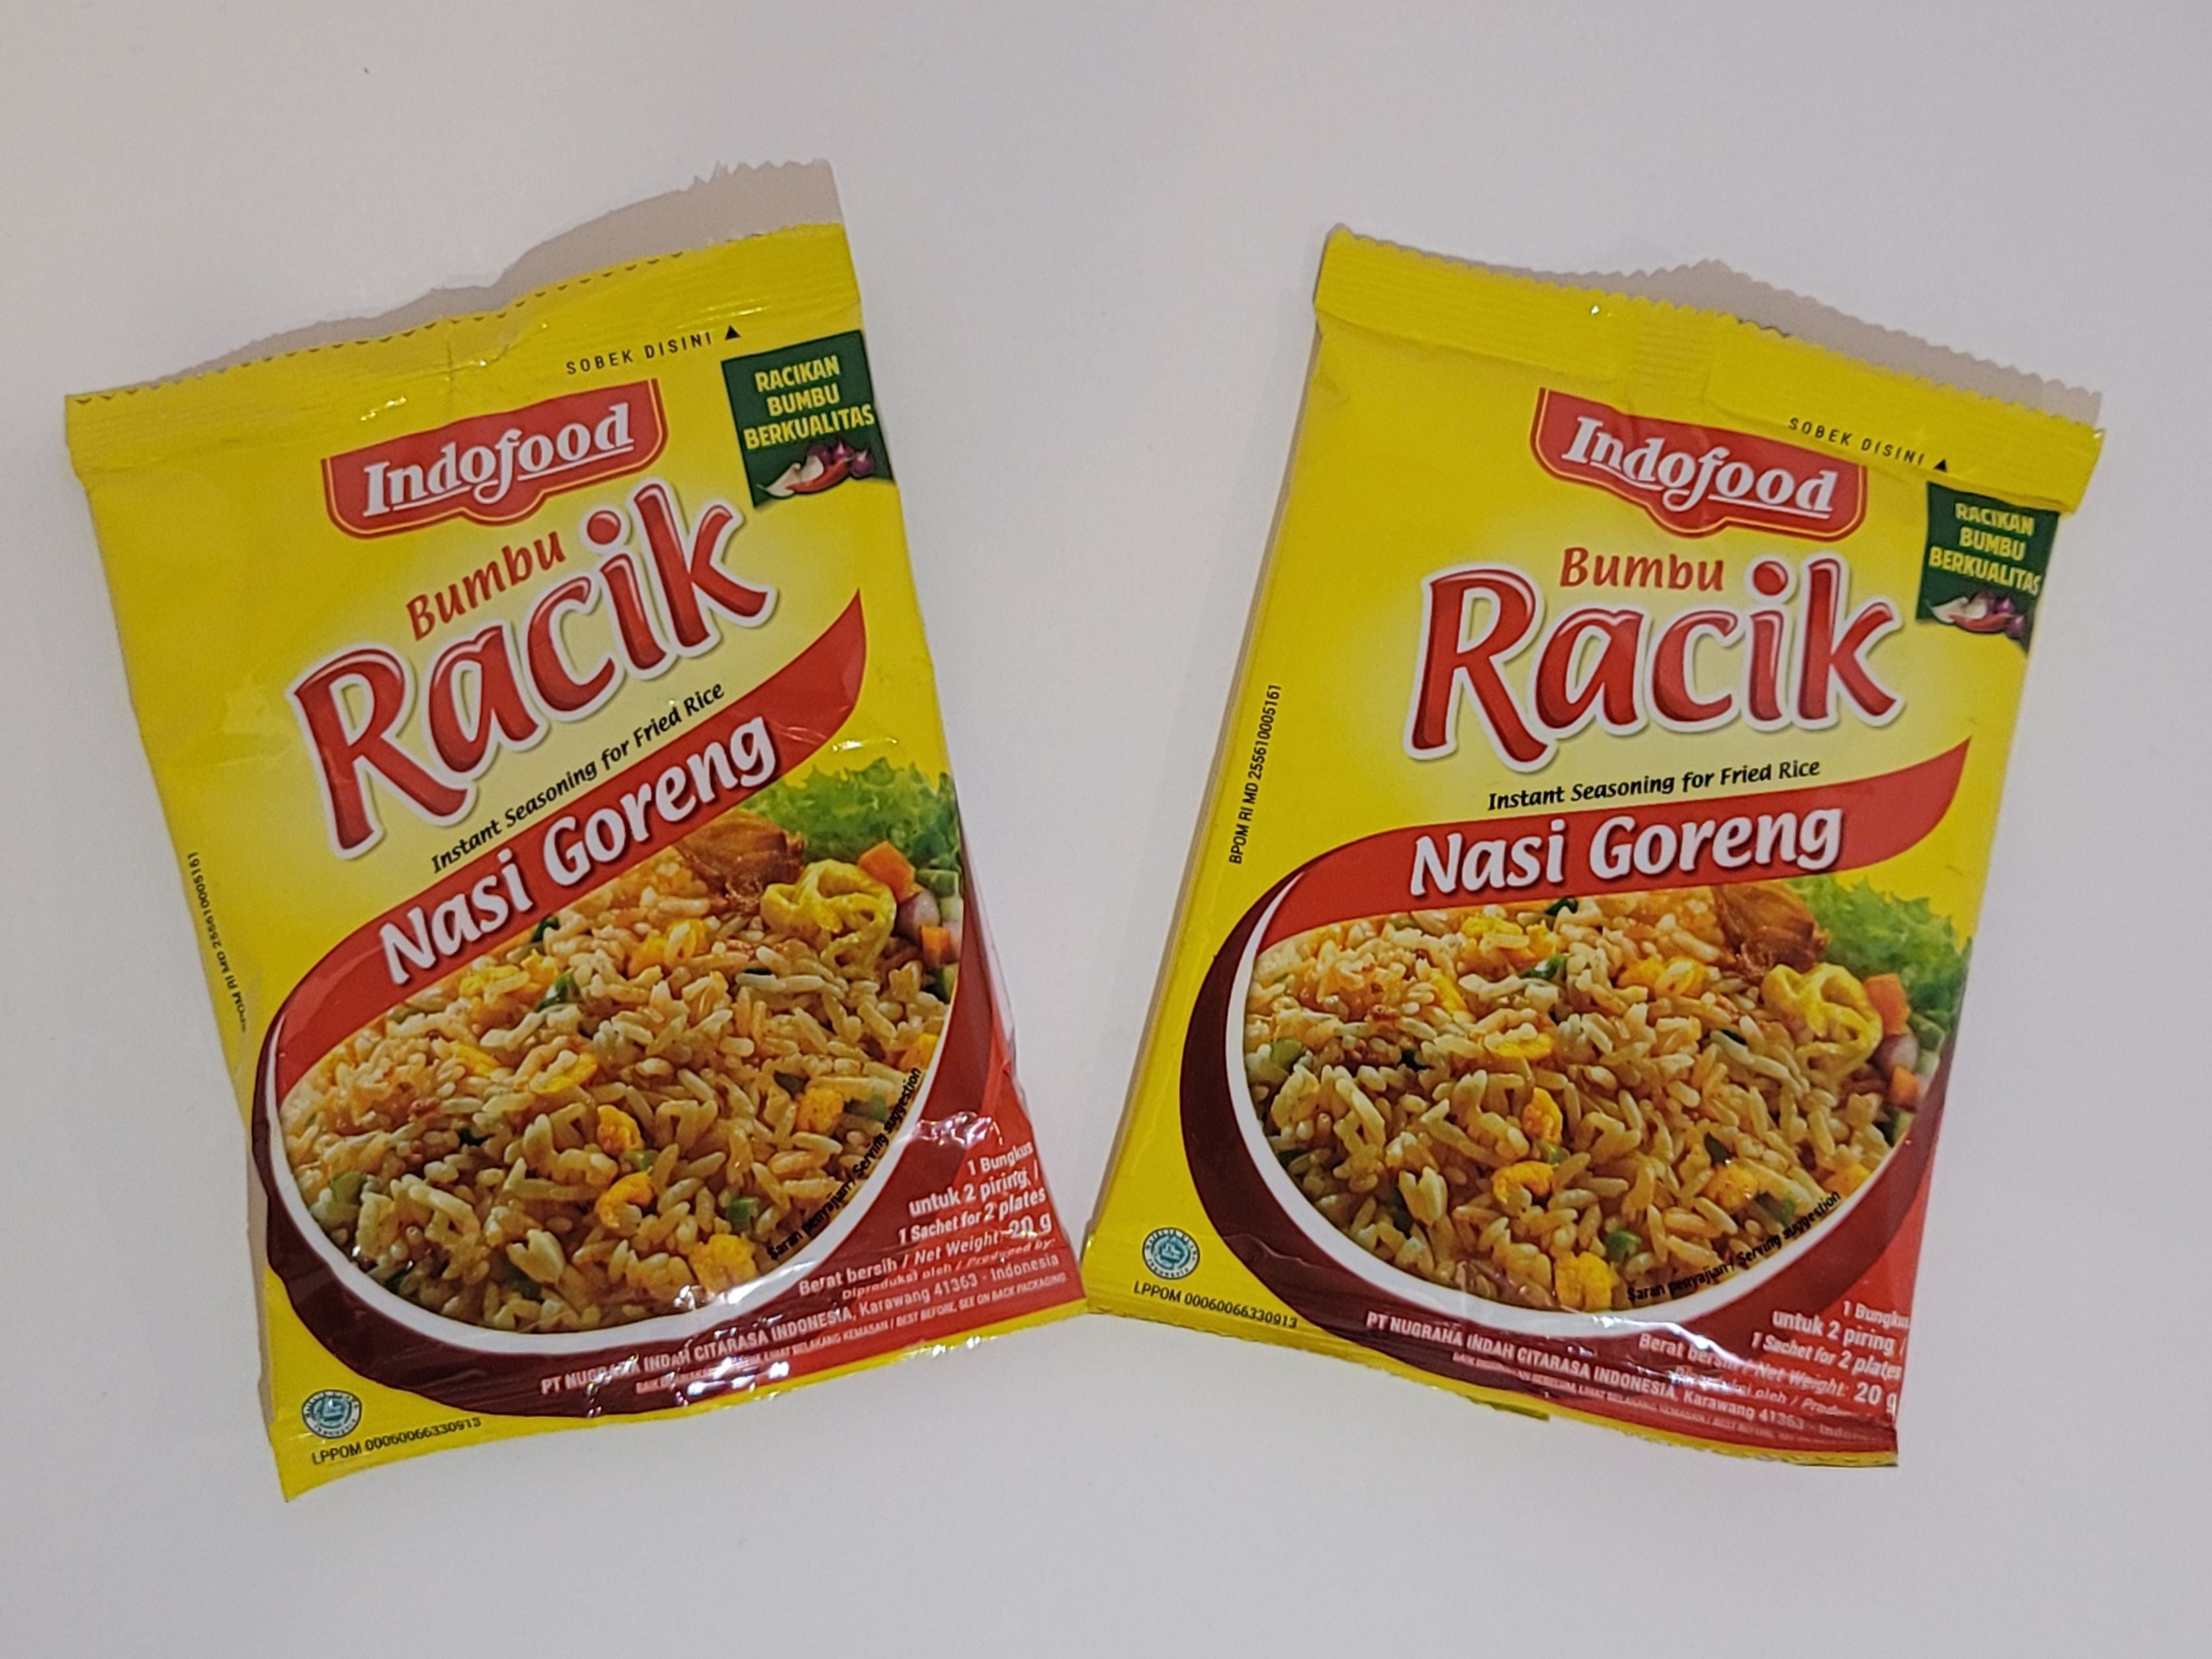 Indofood Racik Nasi Goreng (Instant Seasoning for Fried Rice)